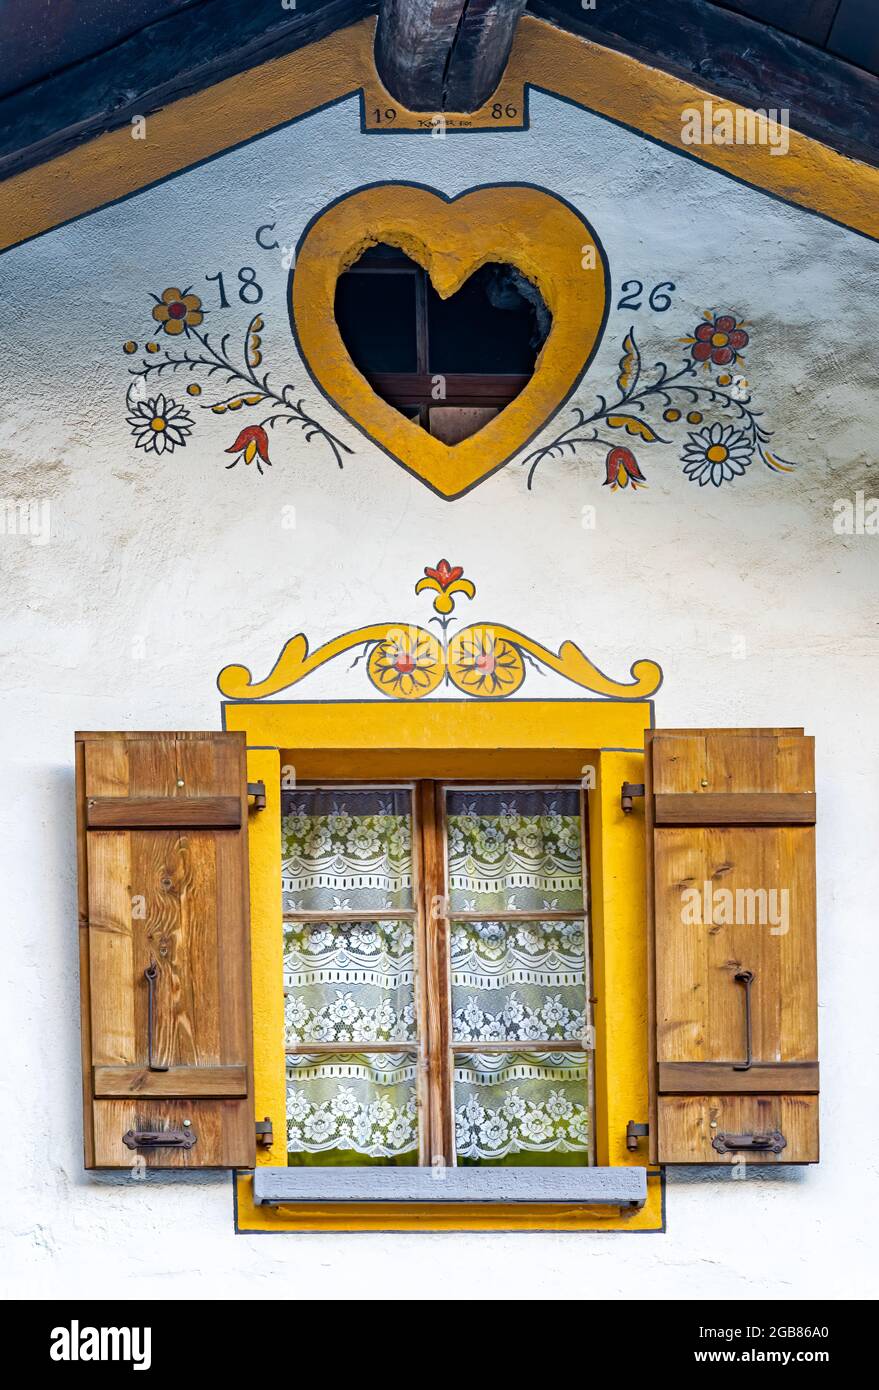 Fenster und malerische Dekoration des traditionellen alten Hauses in  Evolene, einem Dorf im Tal von Herens im französischsprachigen Teil des  Kantons Stockfotografie - Alamy